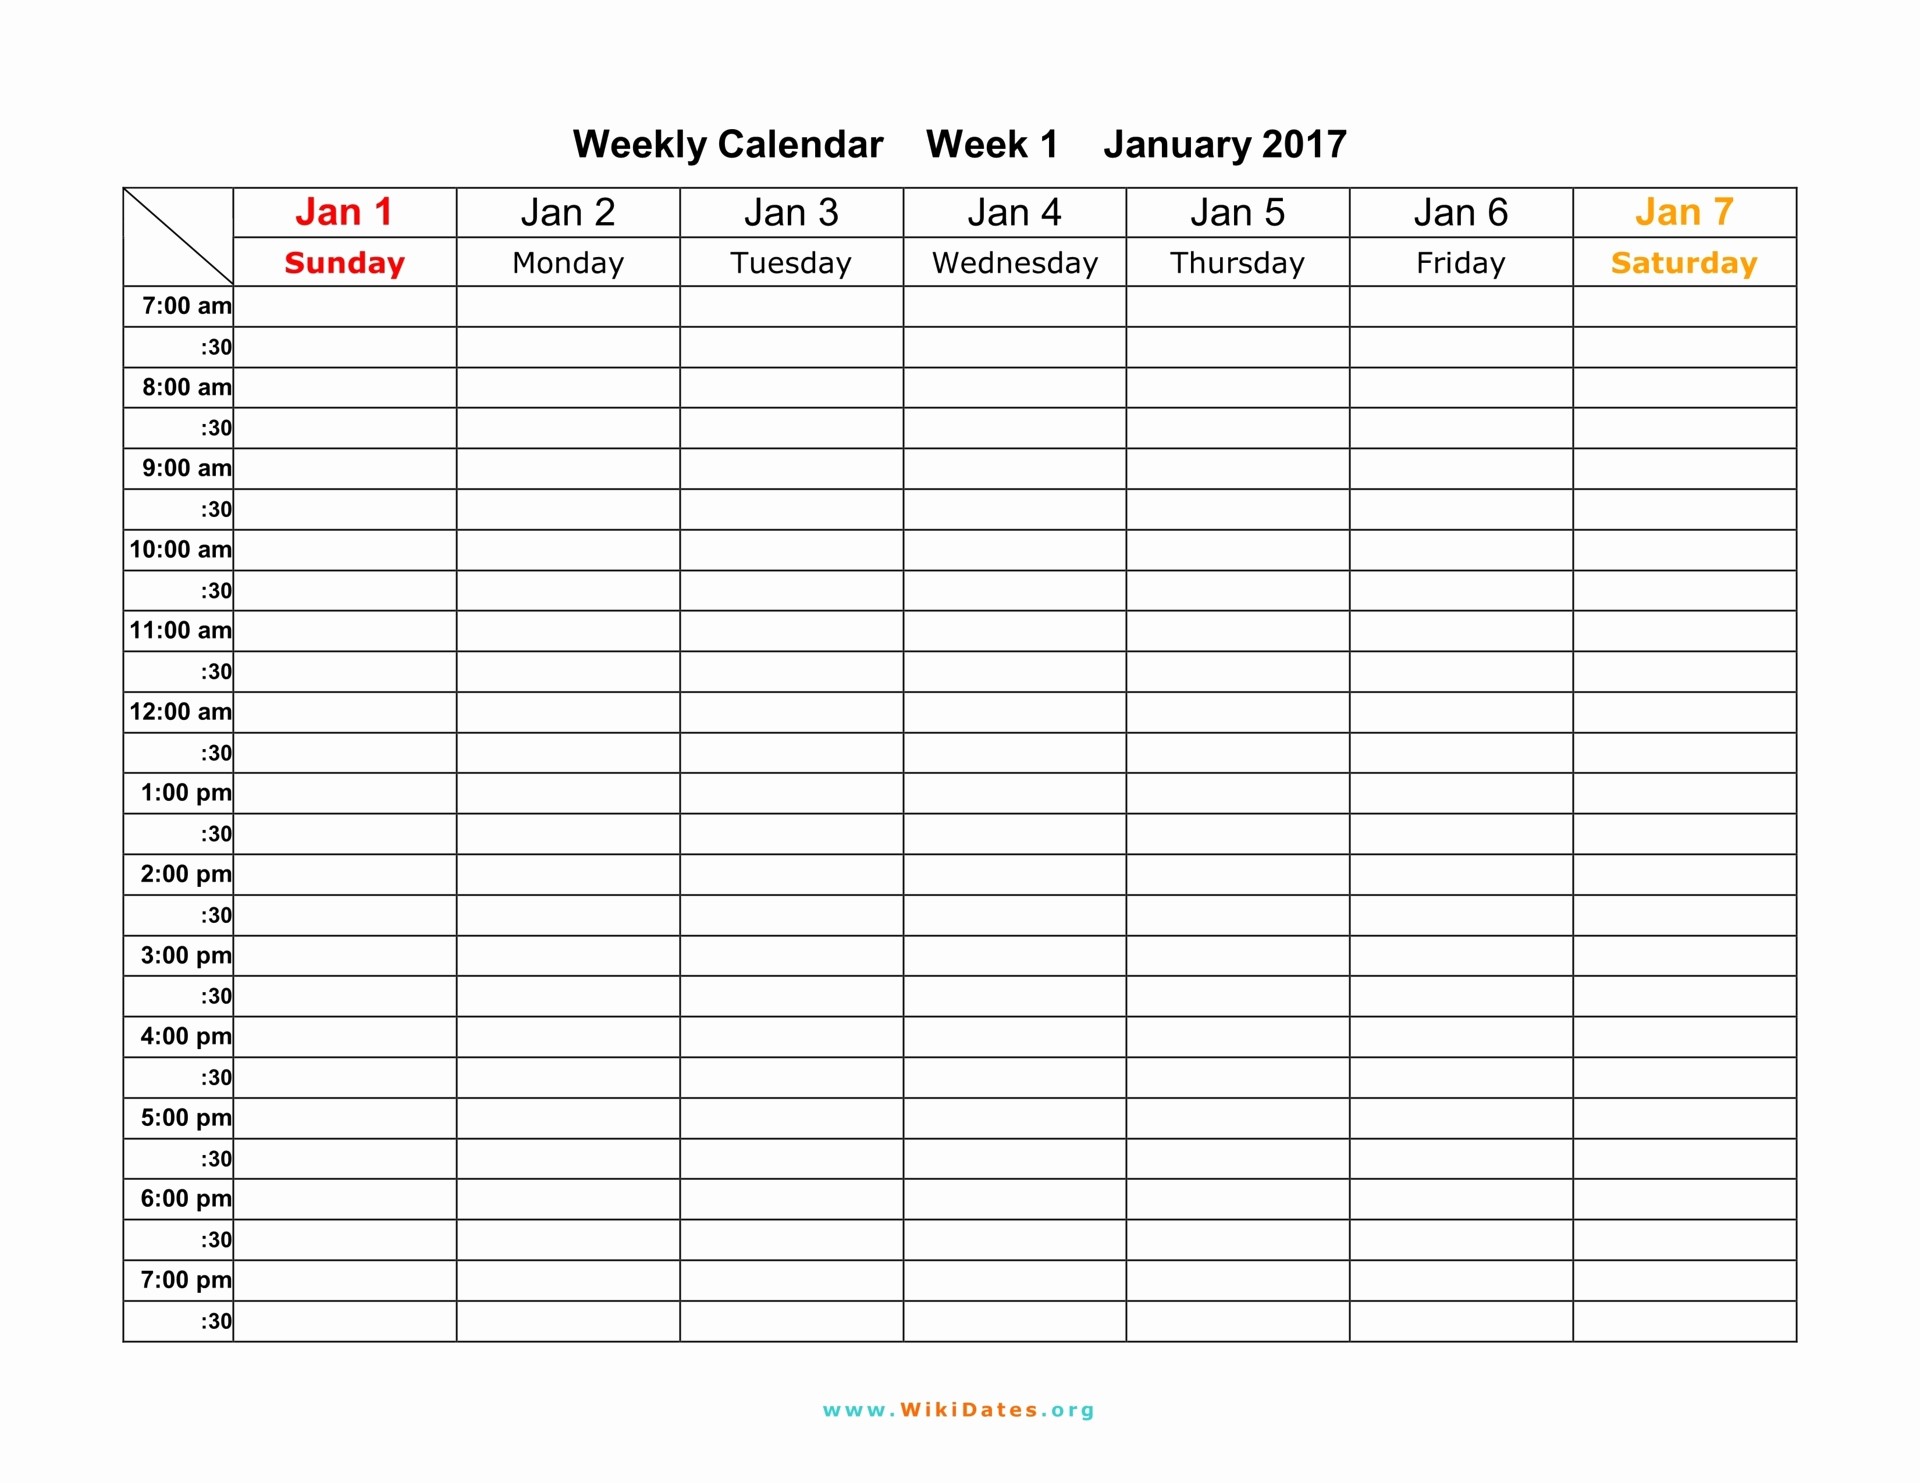 Free Printable Daily Calendar 2018 Luxury Weekly Calendar Download Weekly Calendar 2017 and 2018